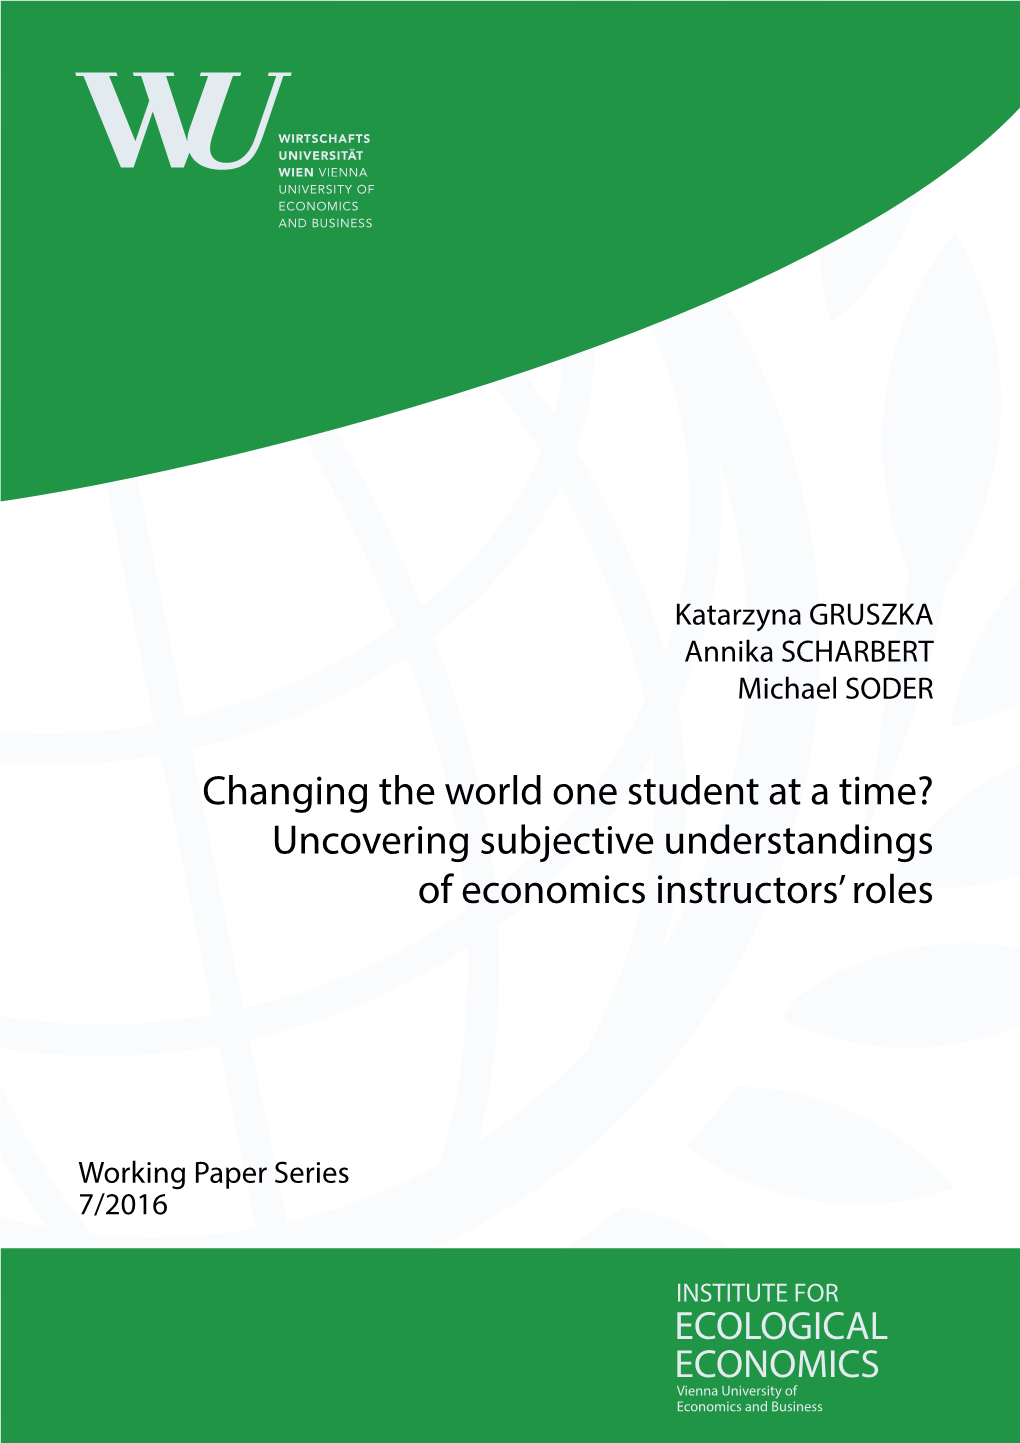 Uncovering Subjective Understandings of Economics Instructors' Roles